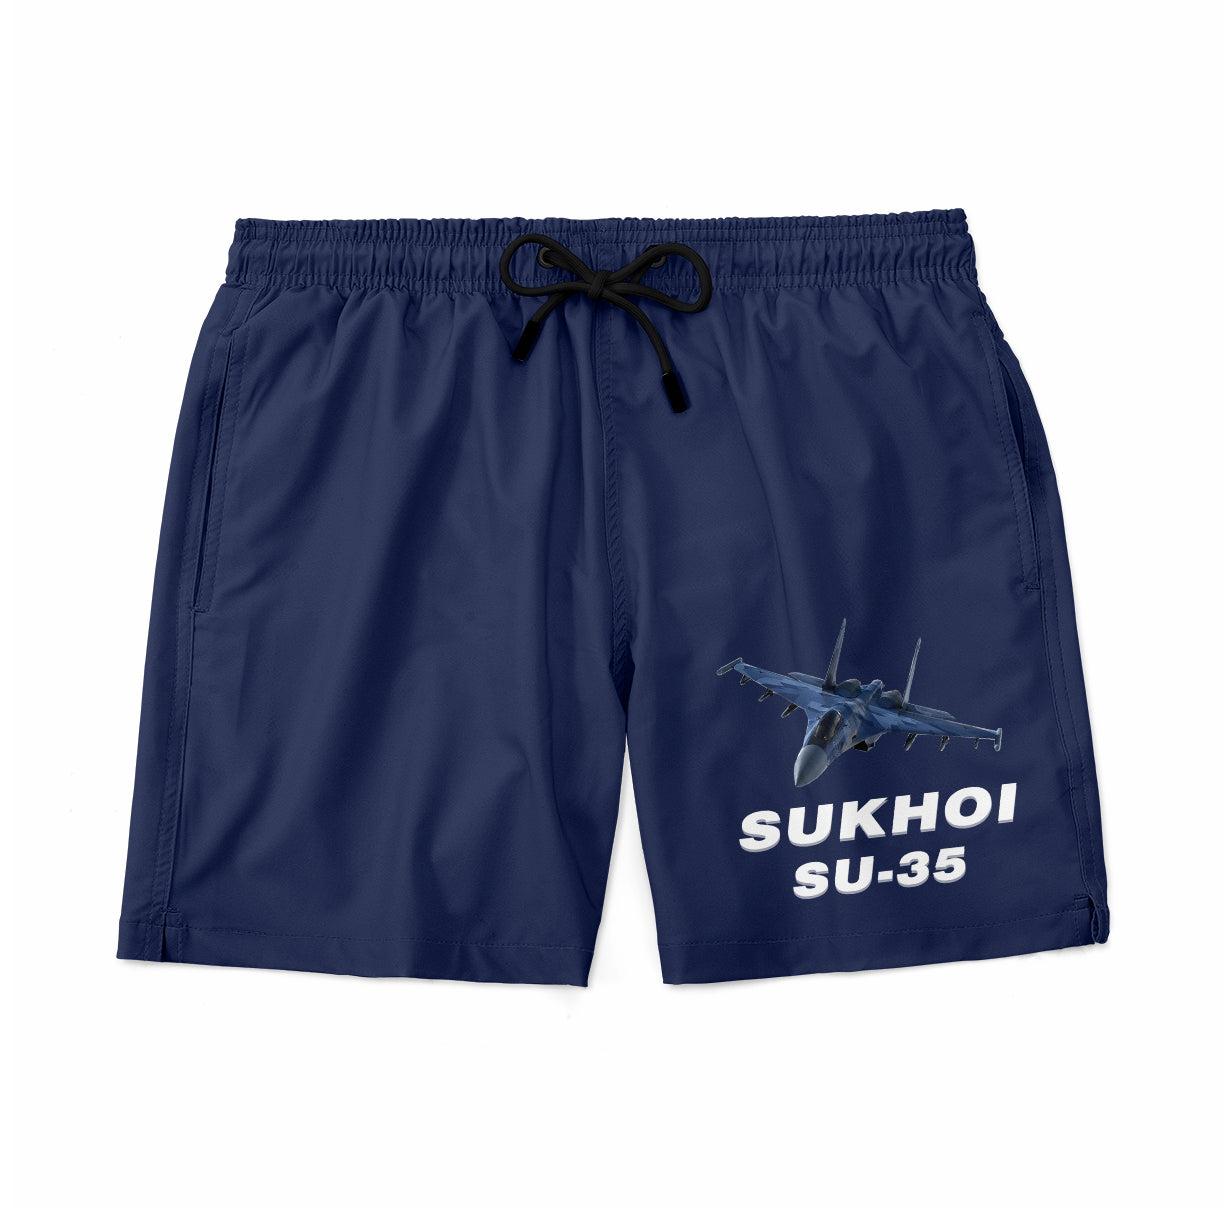 The Sukhoi SU-35 Designed Swim Trunks & Shorts